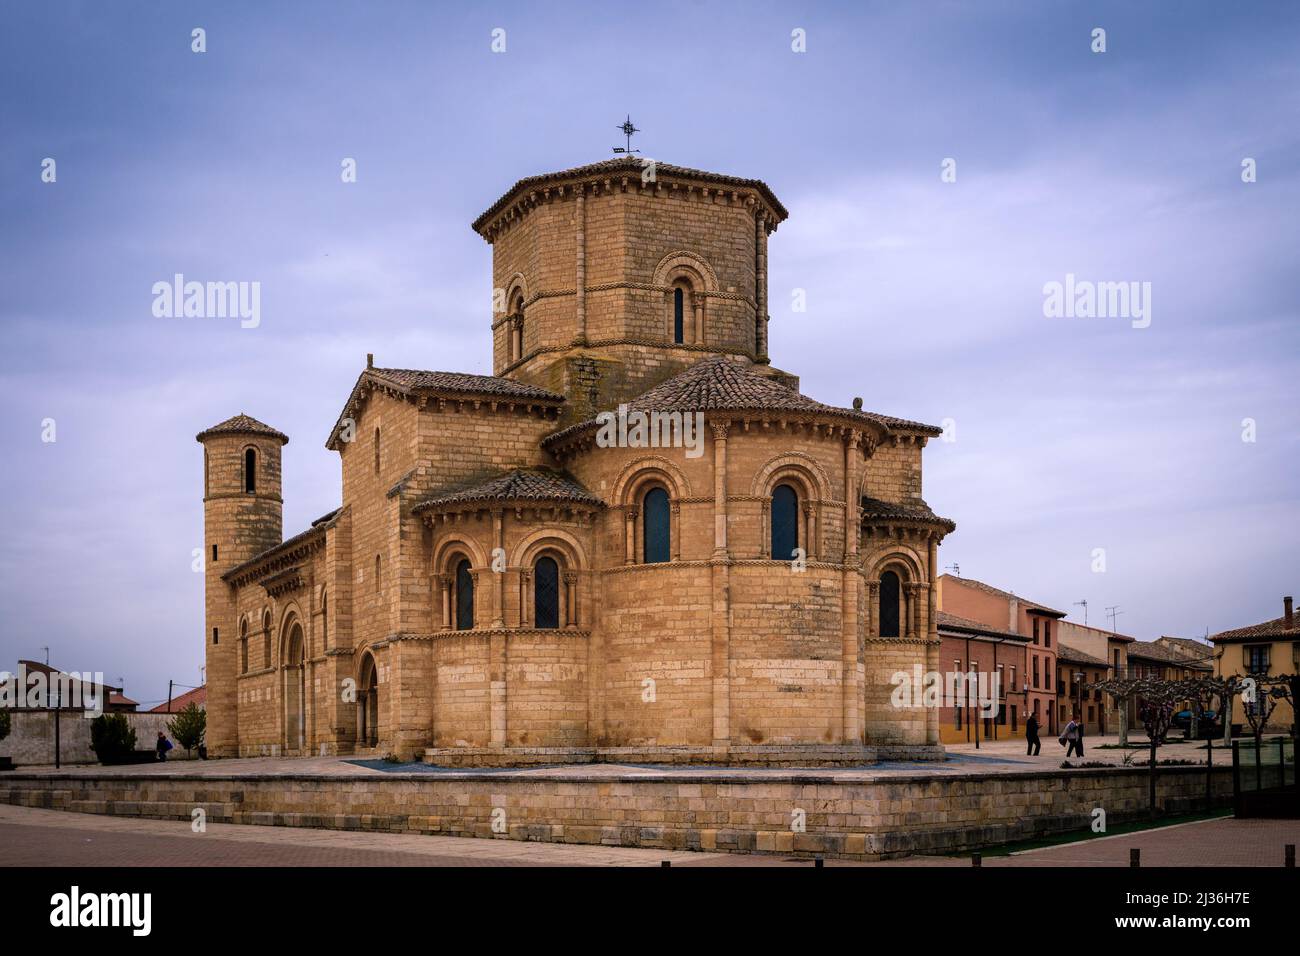 Die romanische Kirche des Heiligen Jakobus in Fromista, Palencia. Spanien. Stockfoto